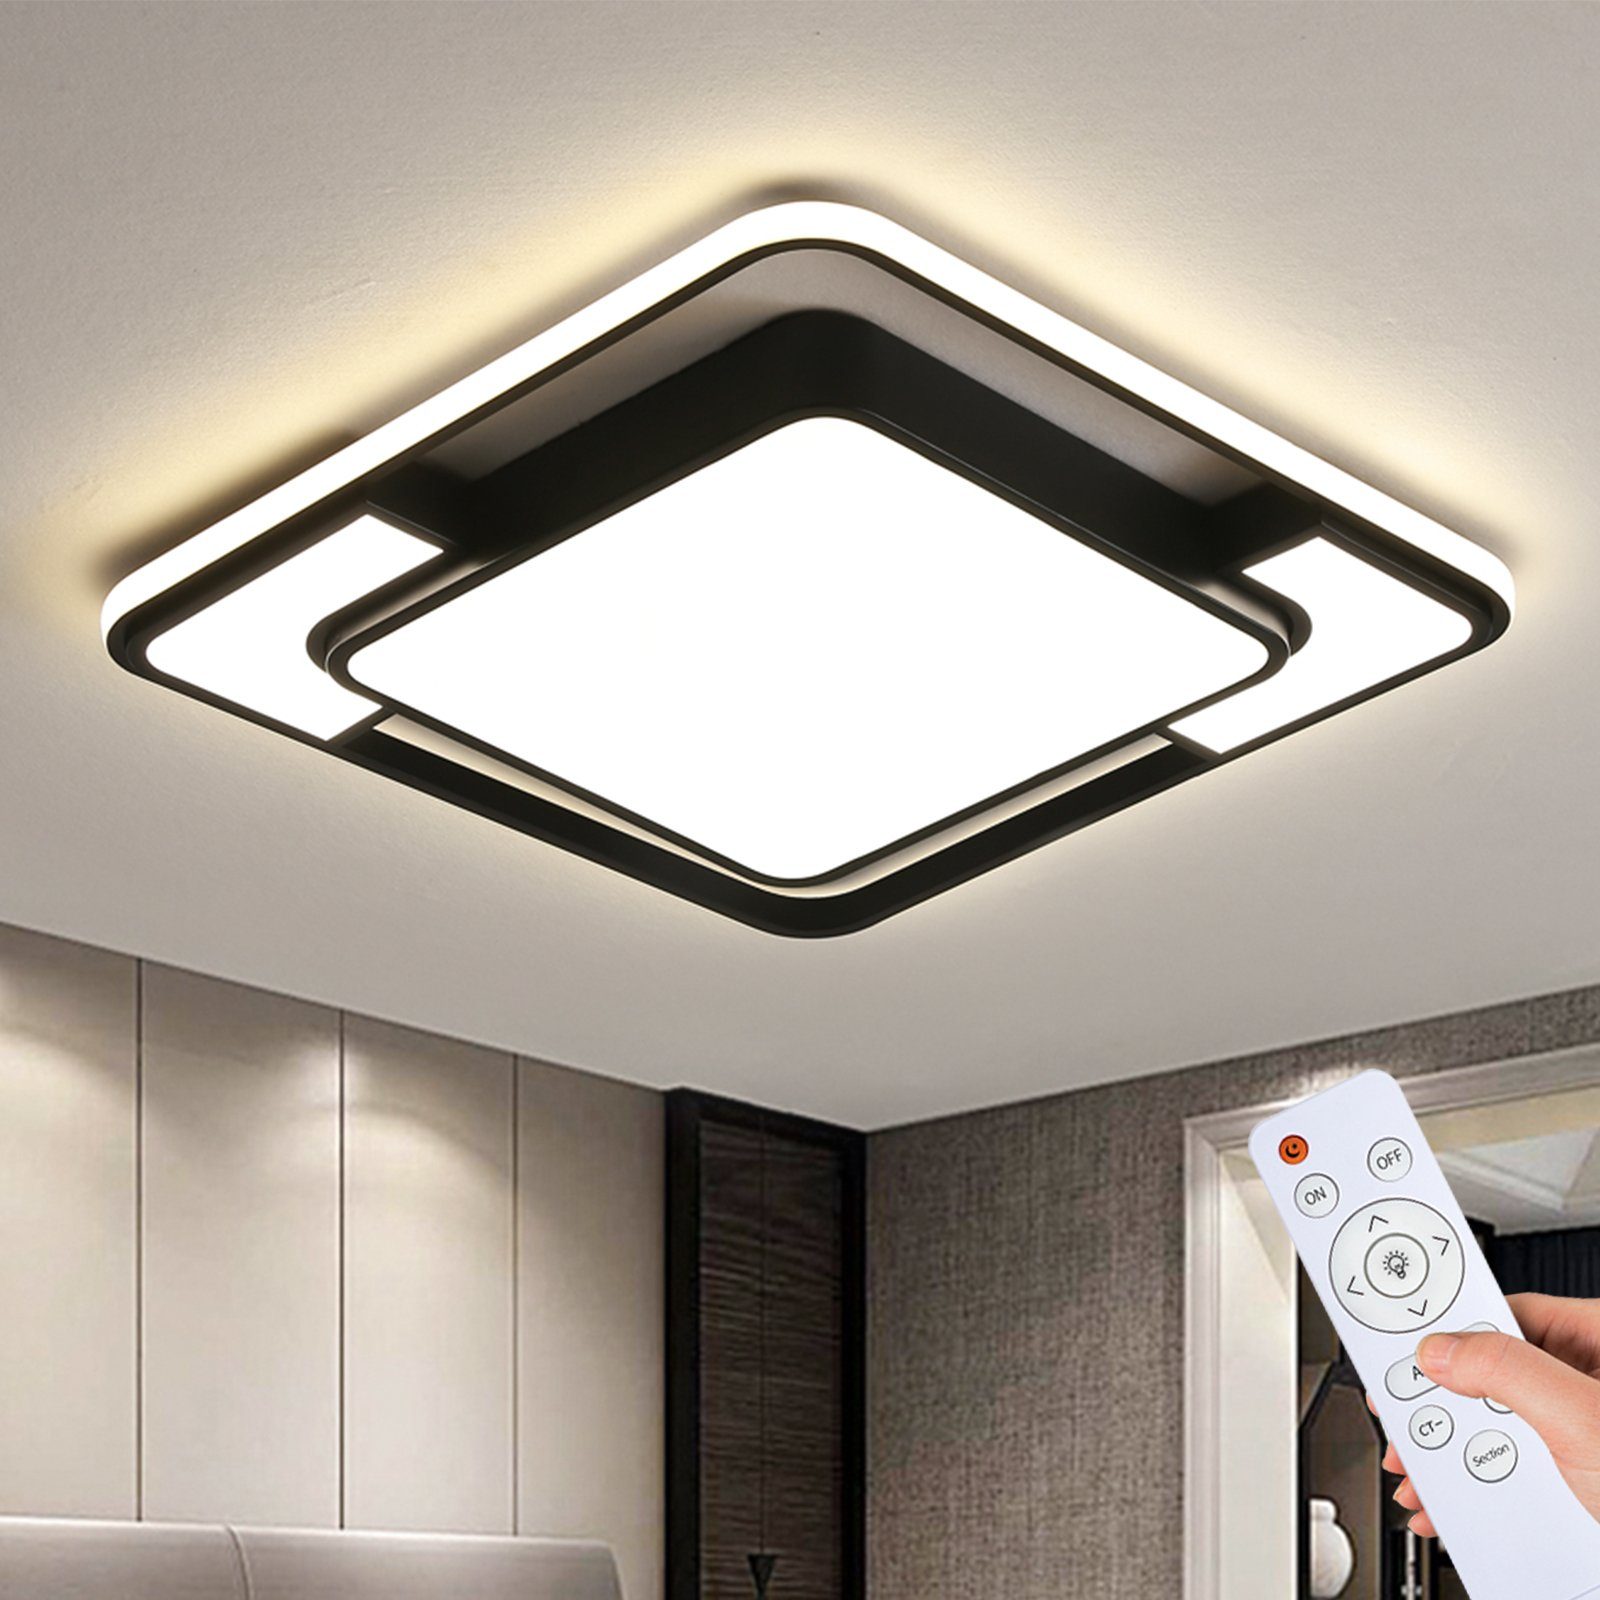 LED Ultraslim Deckenleuchte Badleuchte Deckenlampe Dimmbar Wohnzimmer Silber NEU 